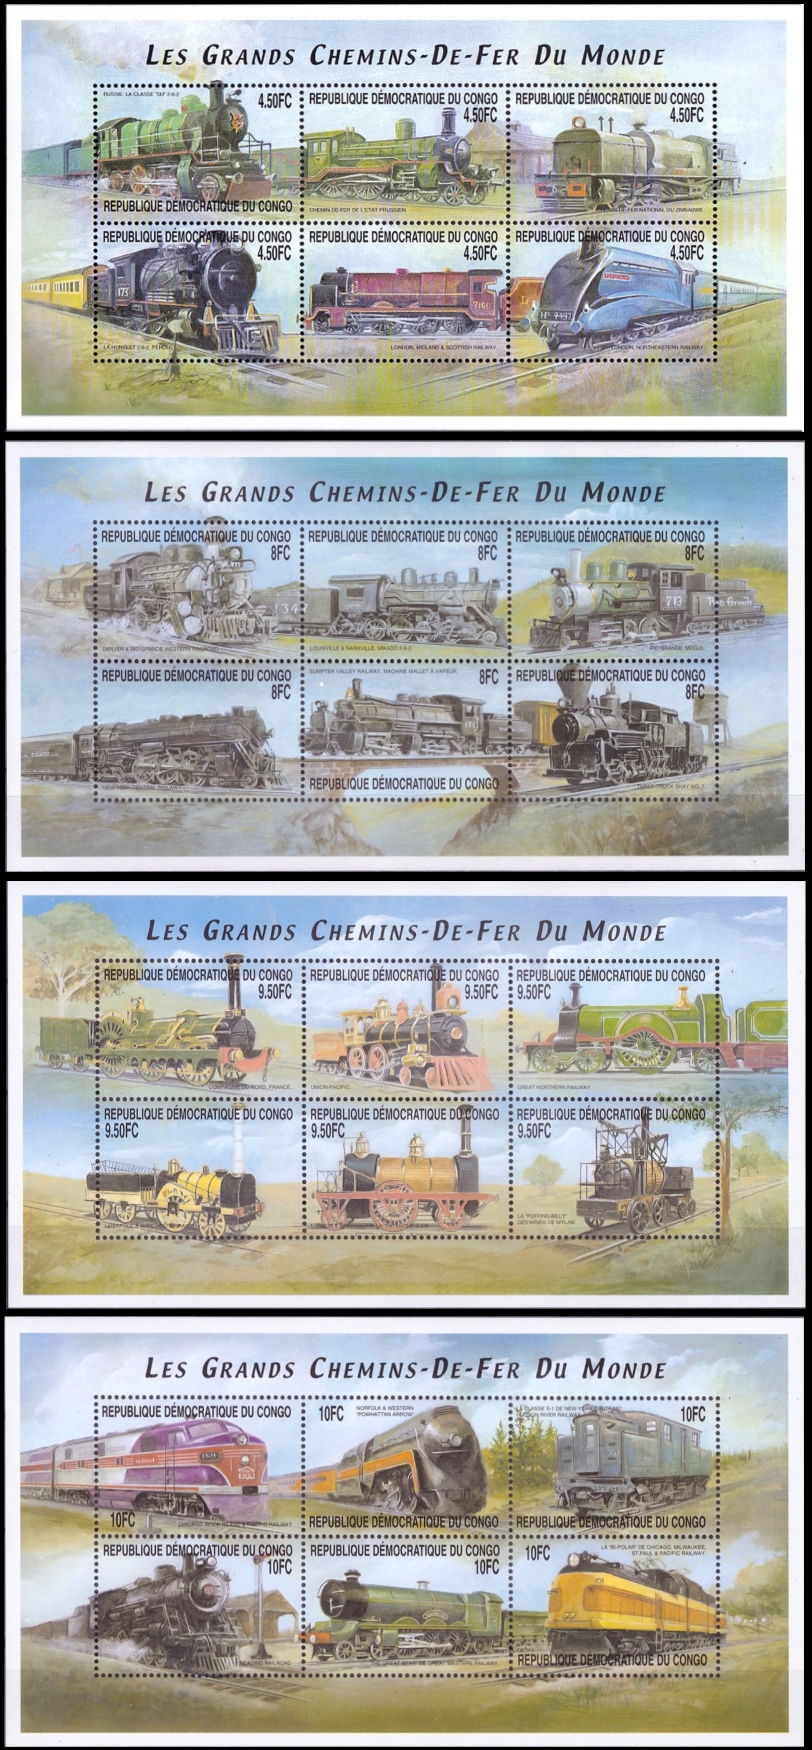 Congo Democratic Republic 2001 Trains Sheets of 6 Scott Number 1560-1563